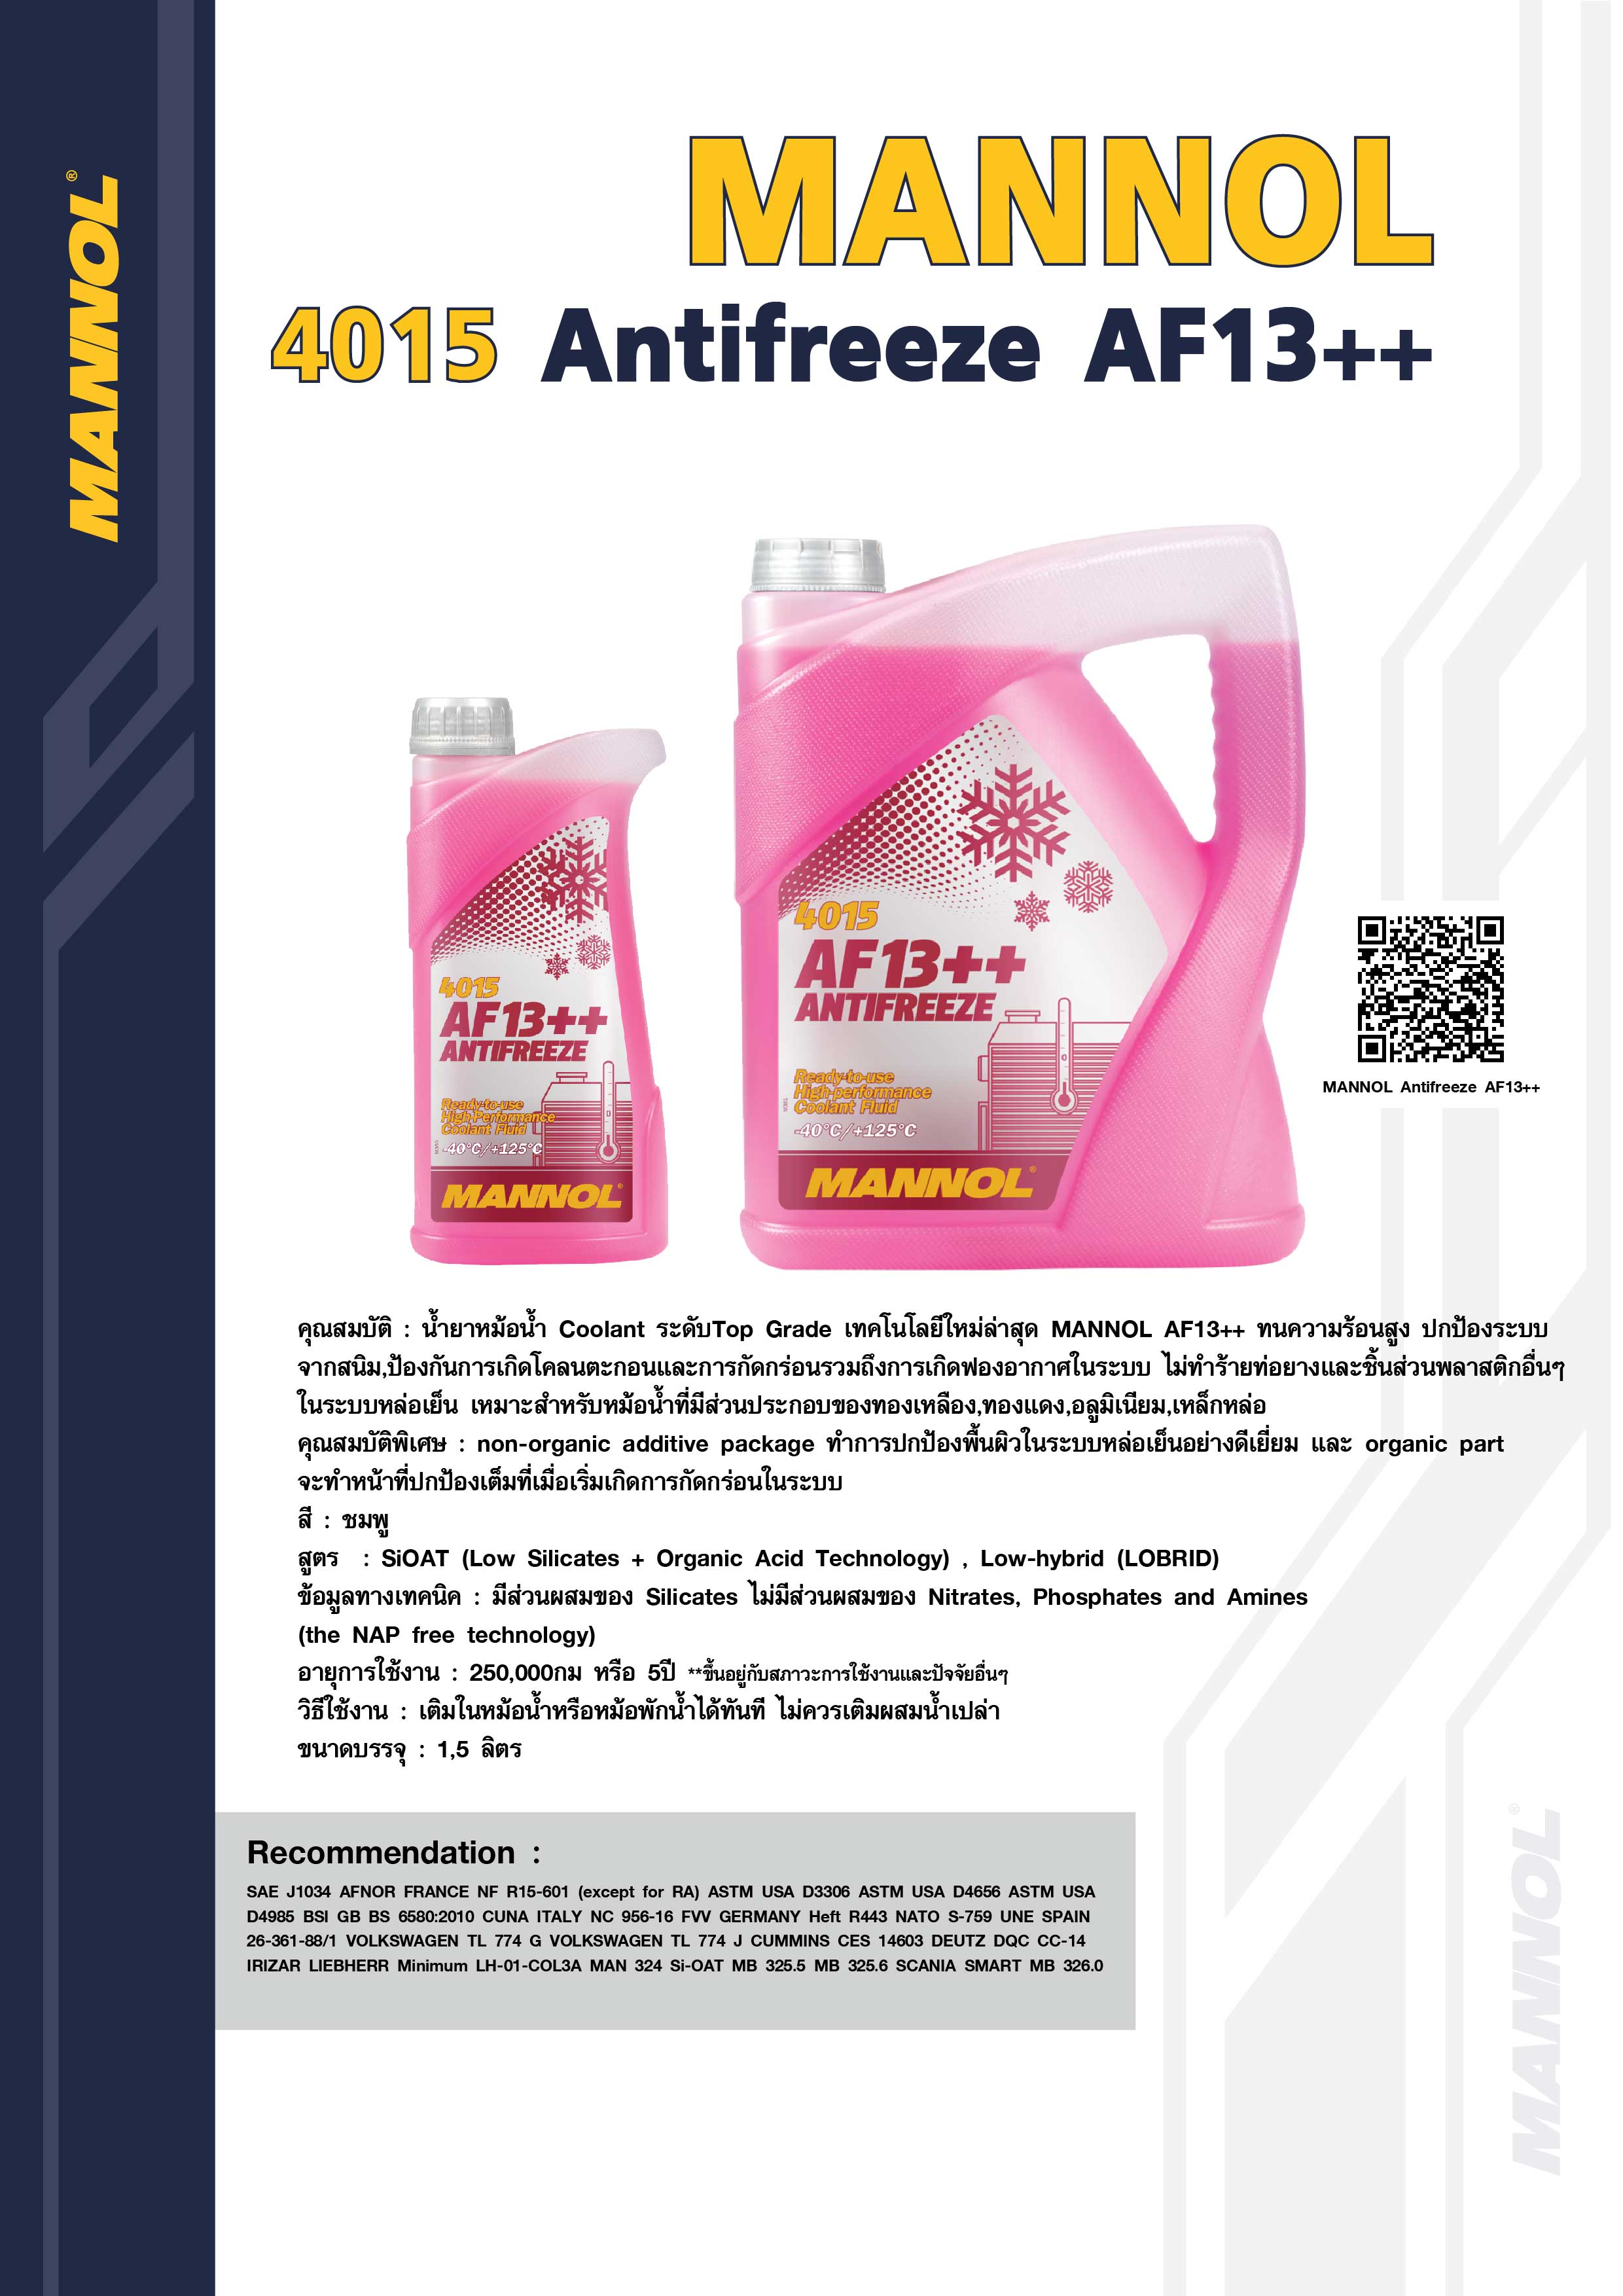 Mannol Antifreeze AF13